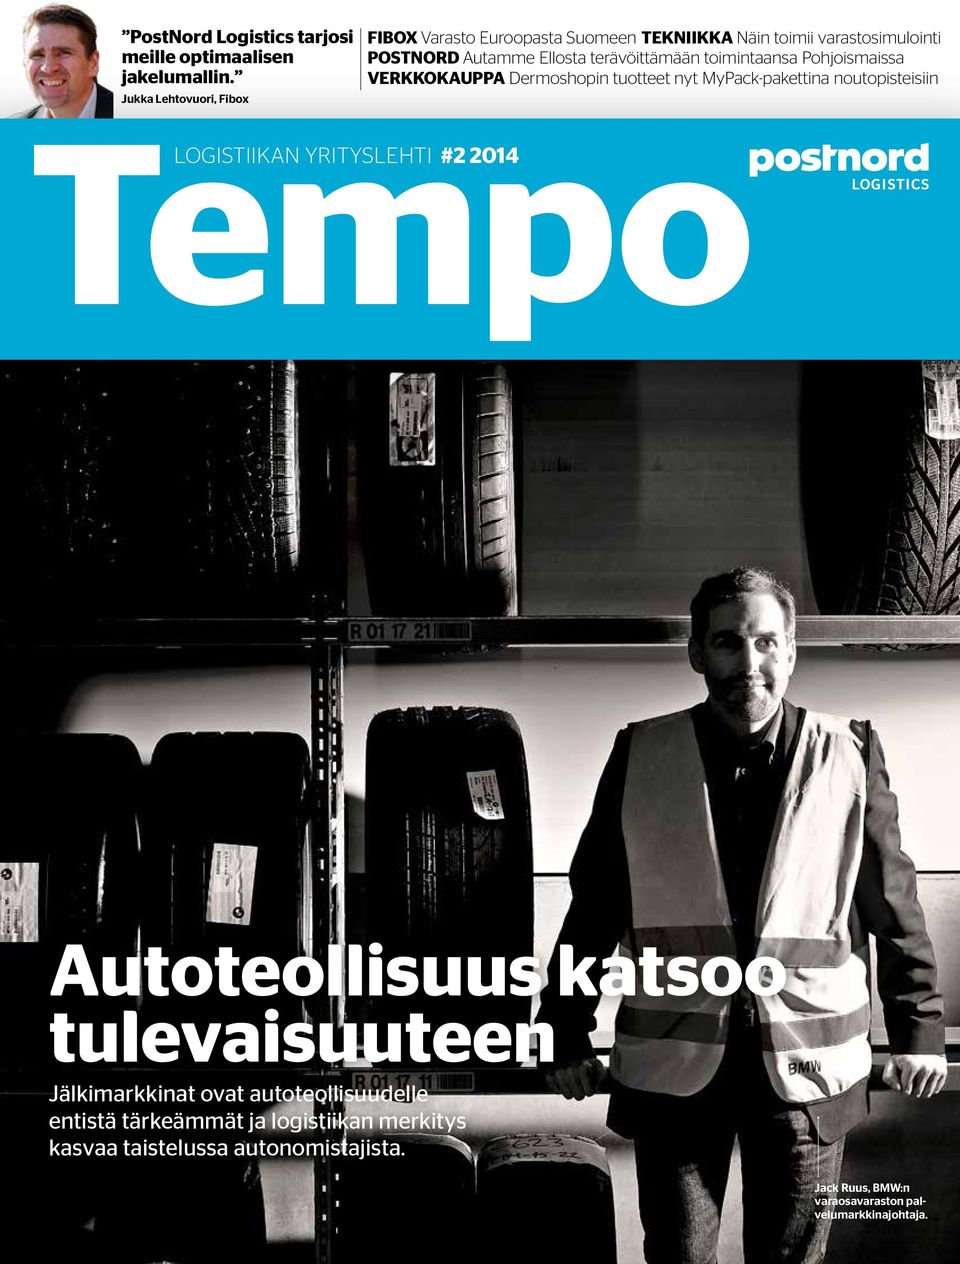 toimintaansa Pohjoismaissa VERKKOKAUPPA Dermoshopin tuotteet nyt MyPack-pakettina noutopisteisiin Tempo LOGISTIIKAN YRITYSLEHTI #2 2014